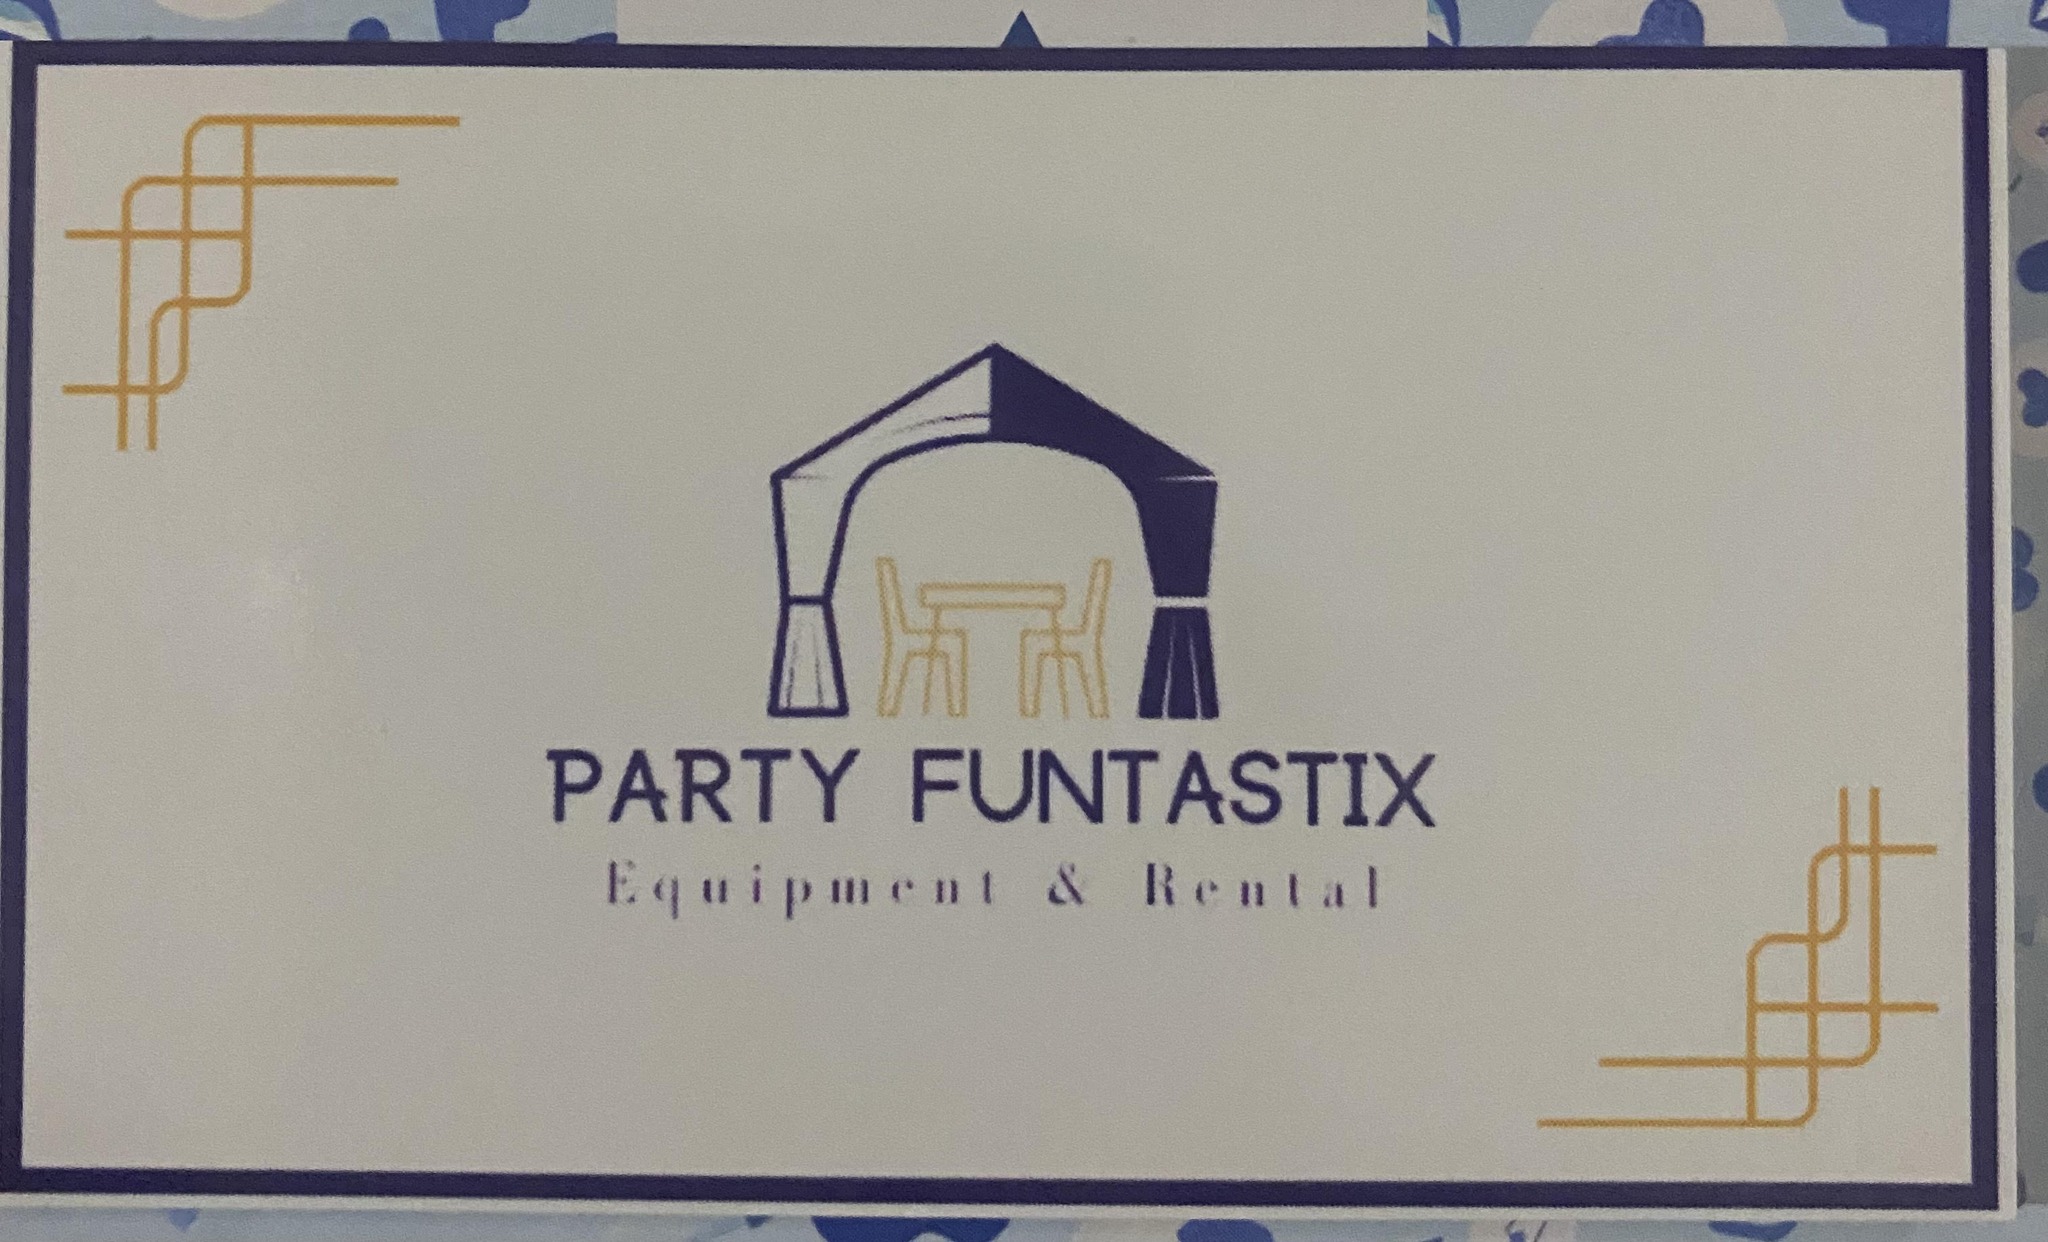 Party Funtastix Equipment & Rental